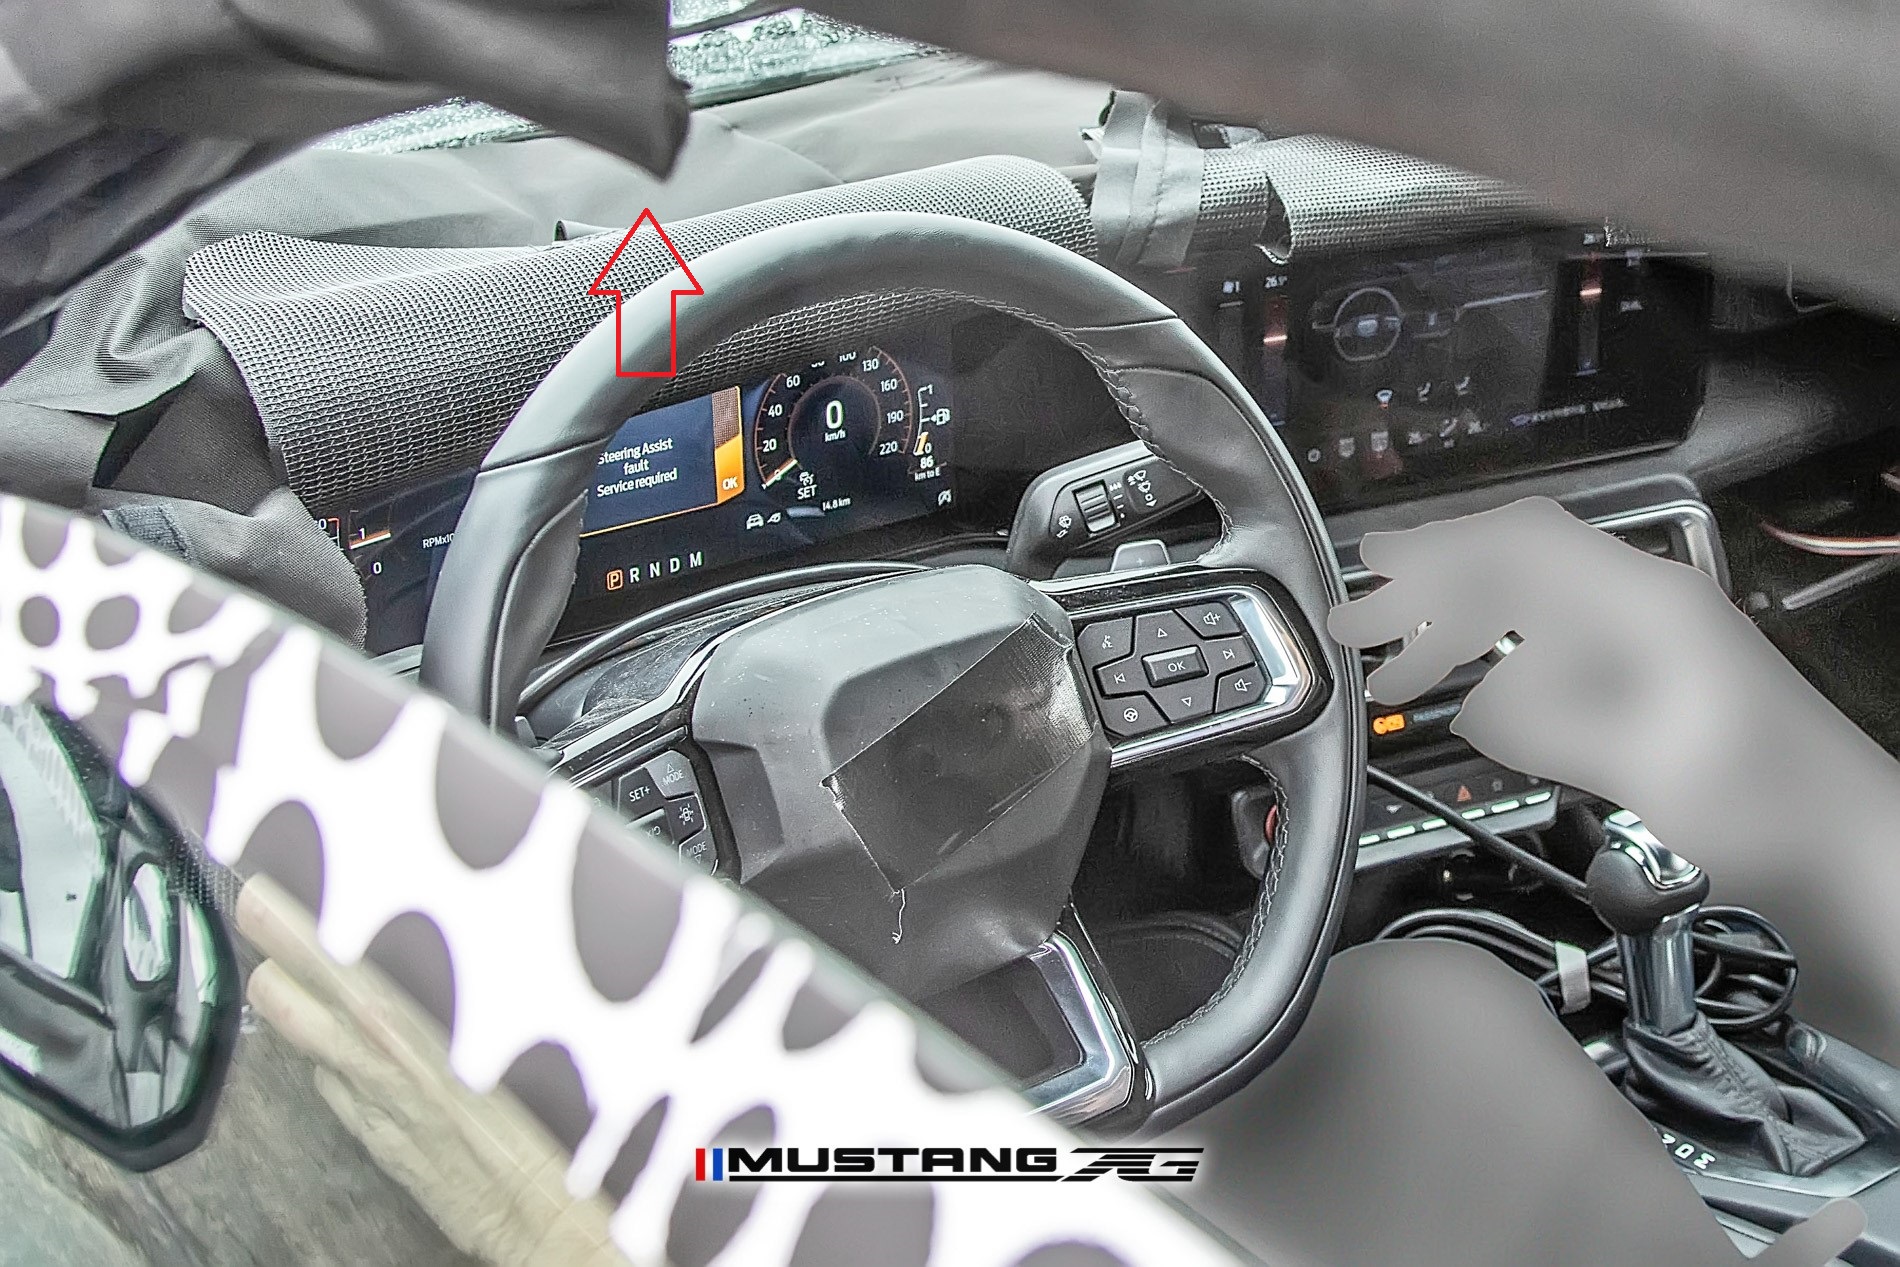 S650 Mustang S650 Mustang INTERIOR First Look Spyshots! + More Exterior Shots S650 2023 Mustang EcoBoost Interior Spyshot 36 (2)